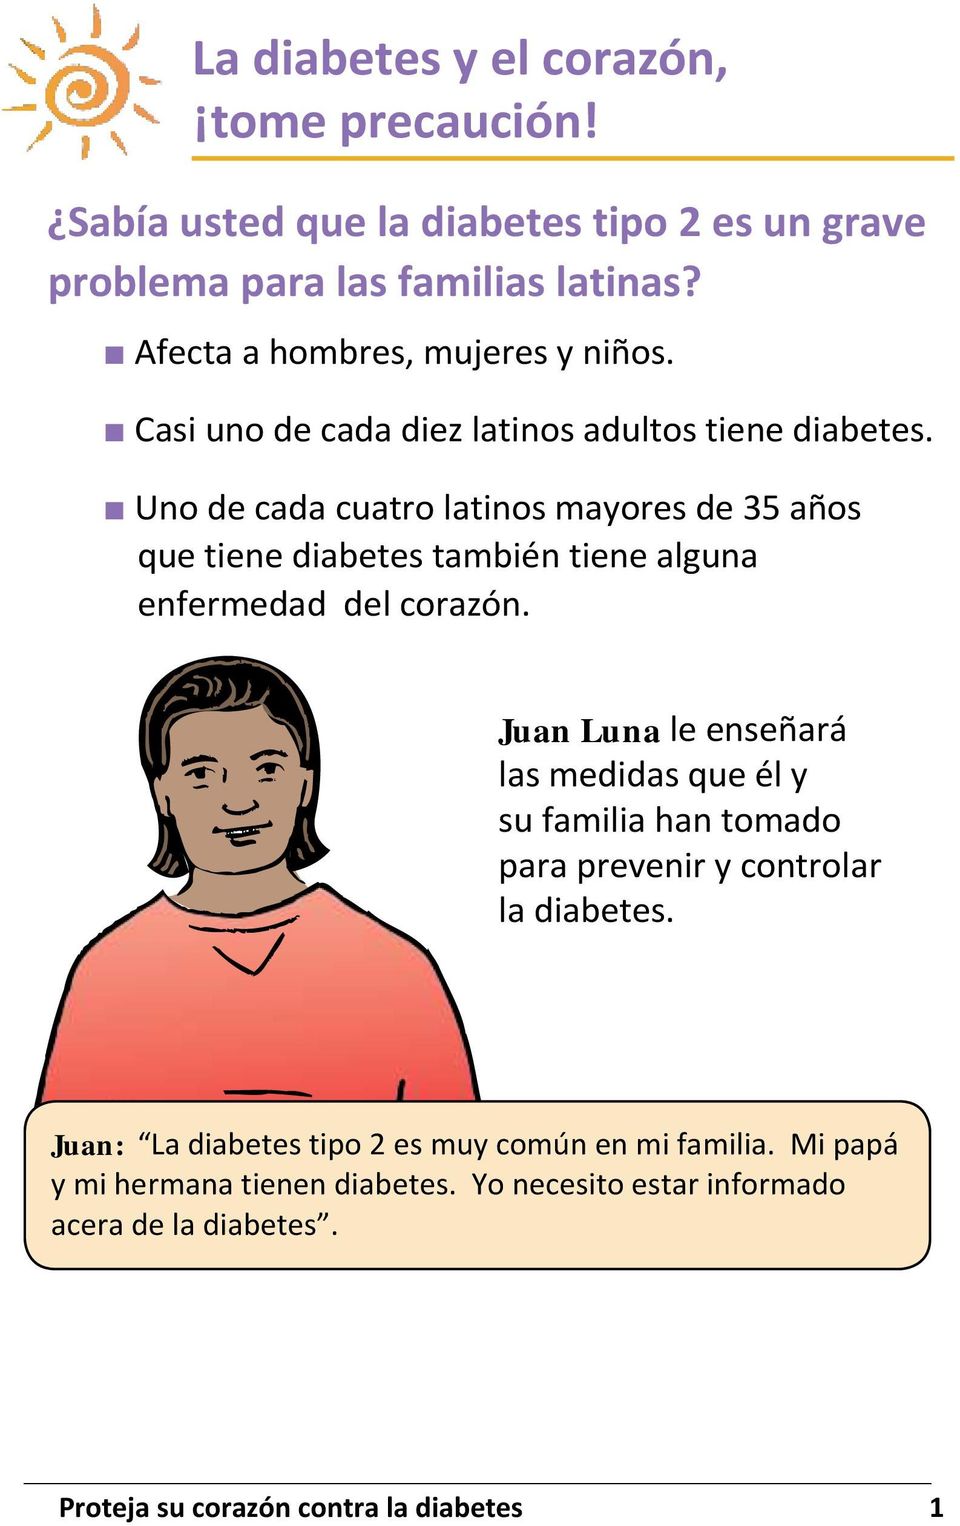 Uno de cada cuatro latinos mayores de 35 años que tiene diabetes también tiene alguna enfermedad del corazón.